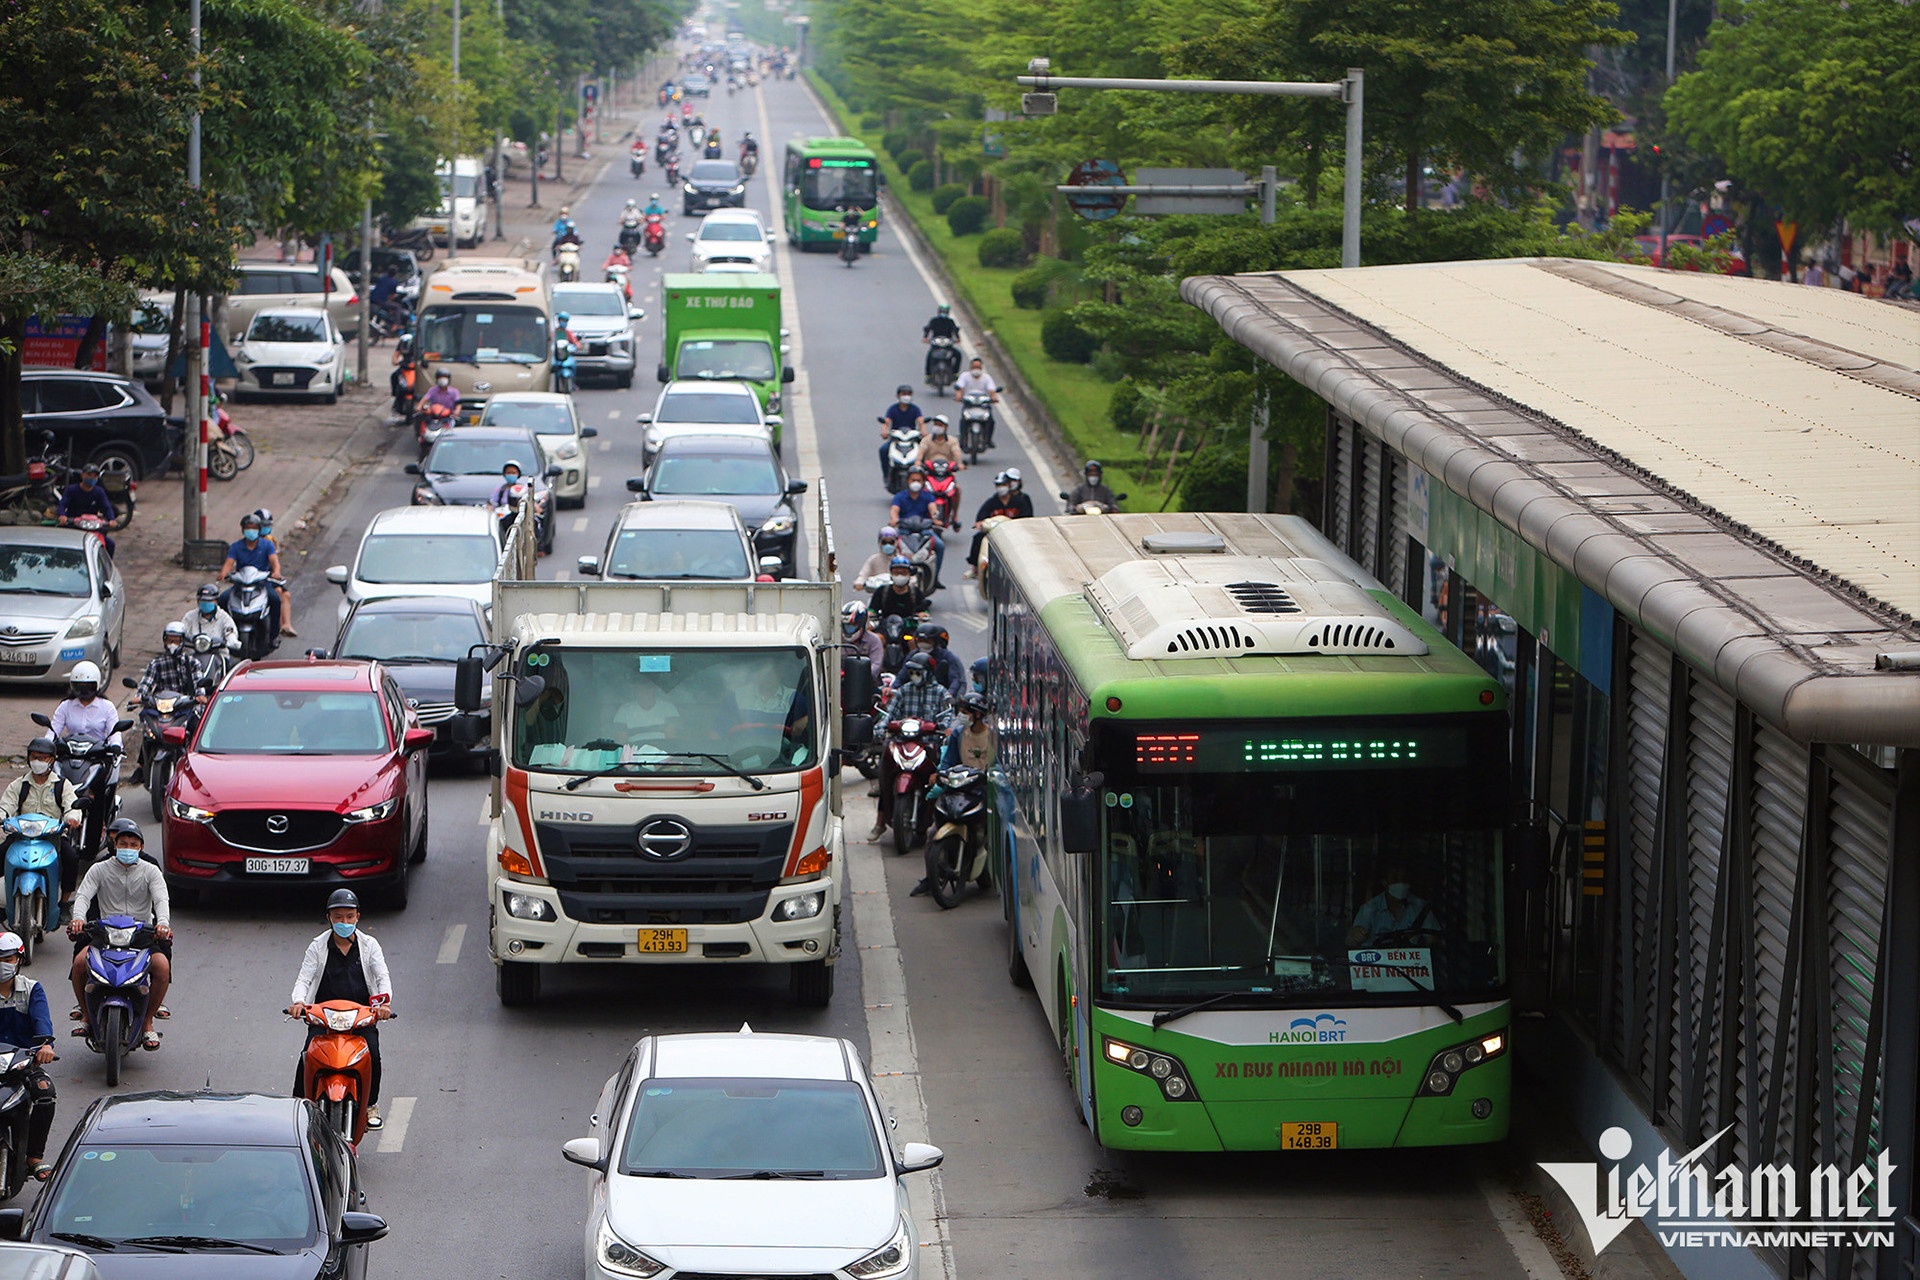 Hà Nội sẽ thay tuyến buýt nhanh bằng đường sắt đô thị - ảnh 2